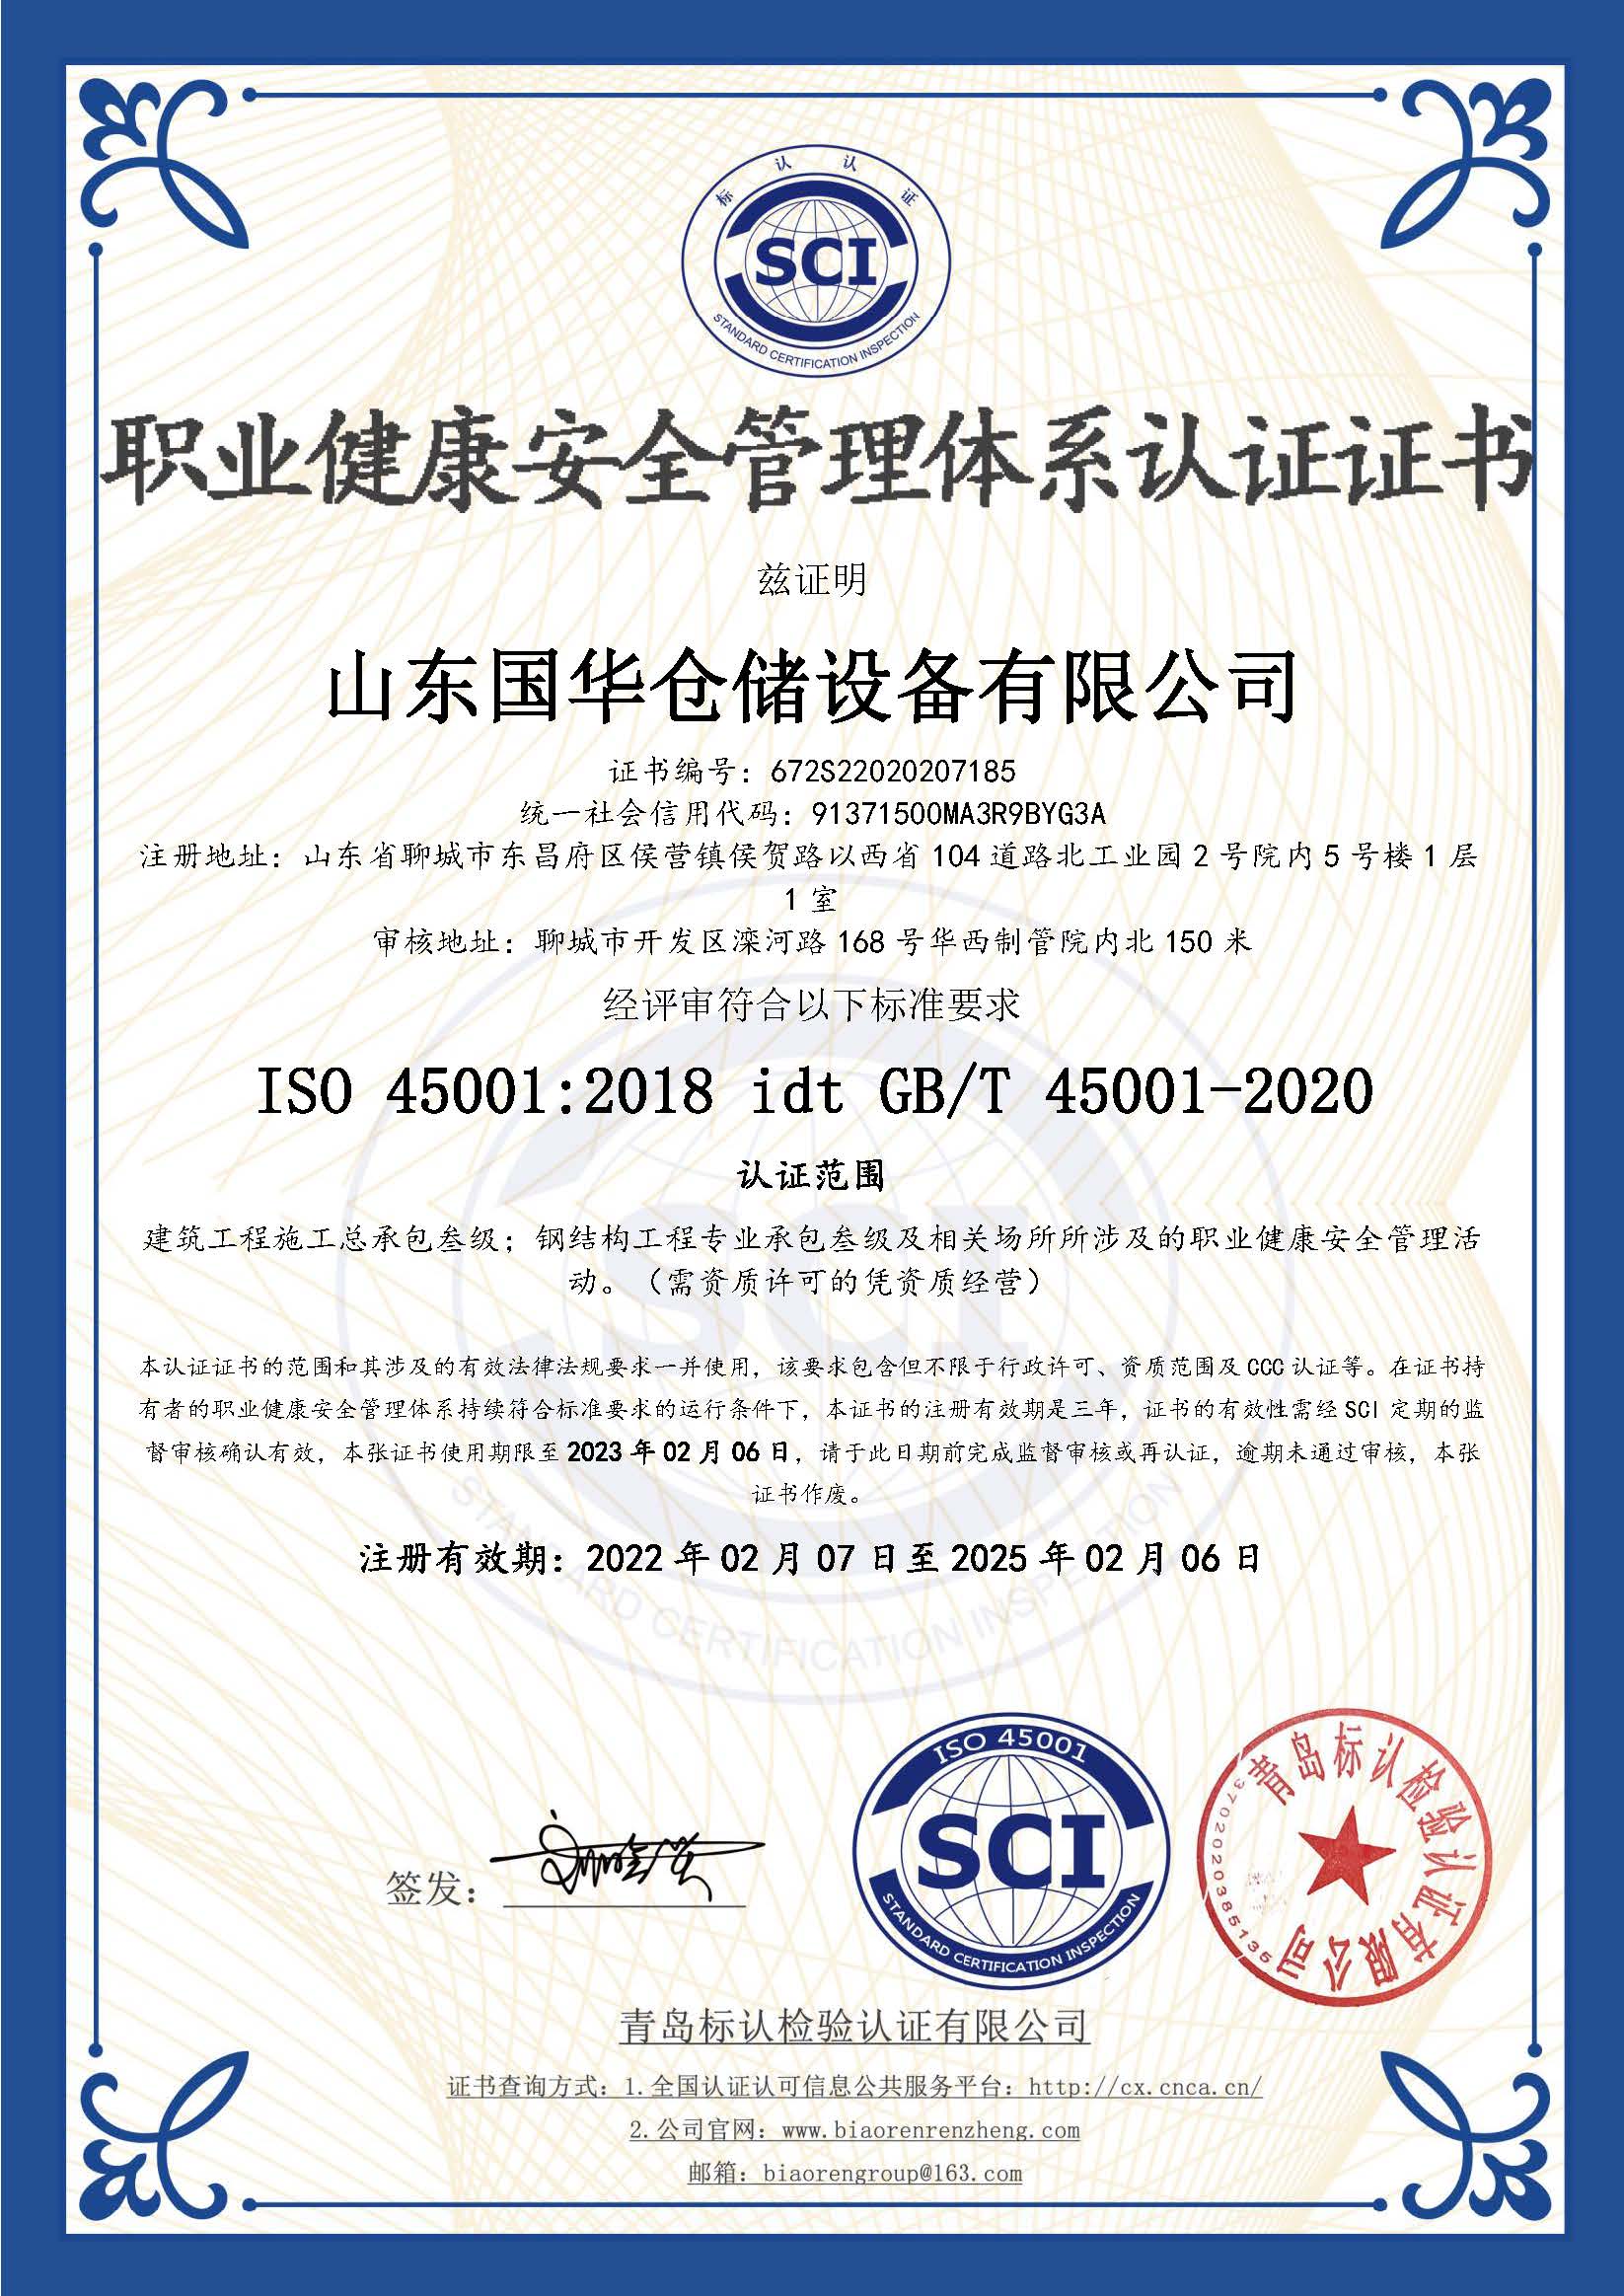 咸宁钢板仓职业健康安全管理体系认证证书